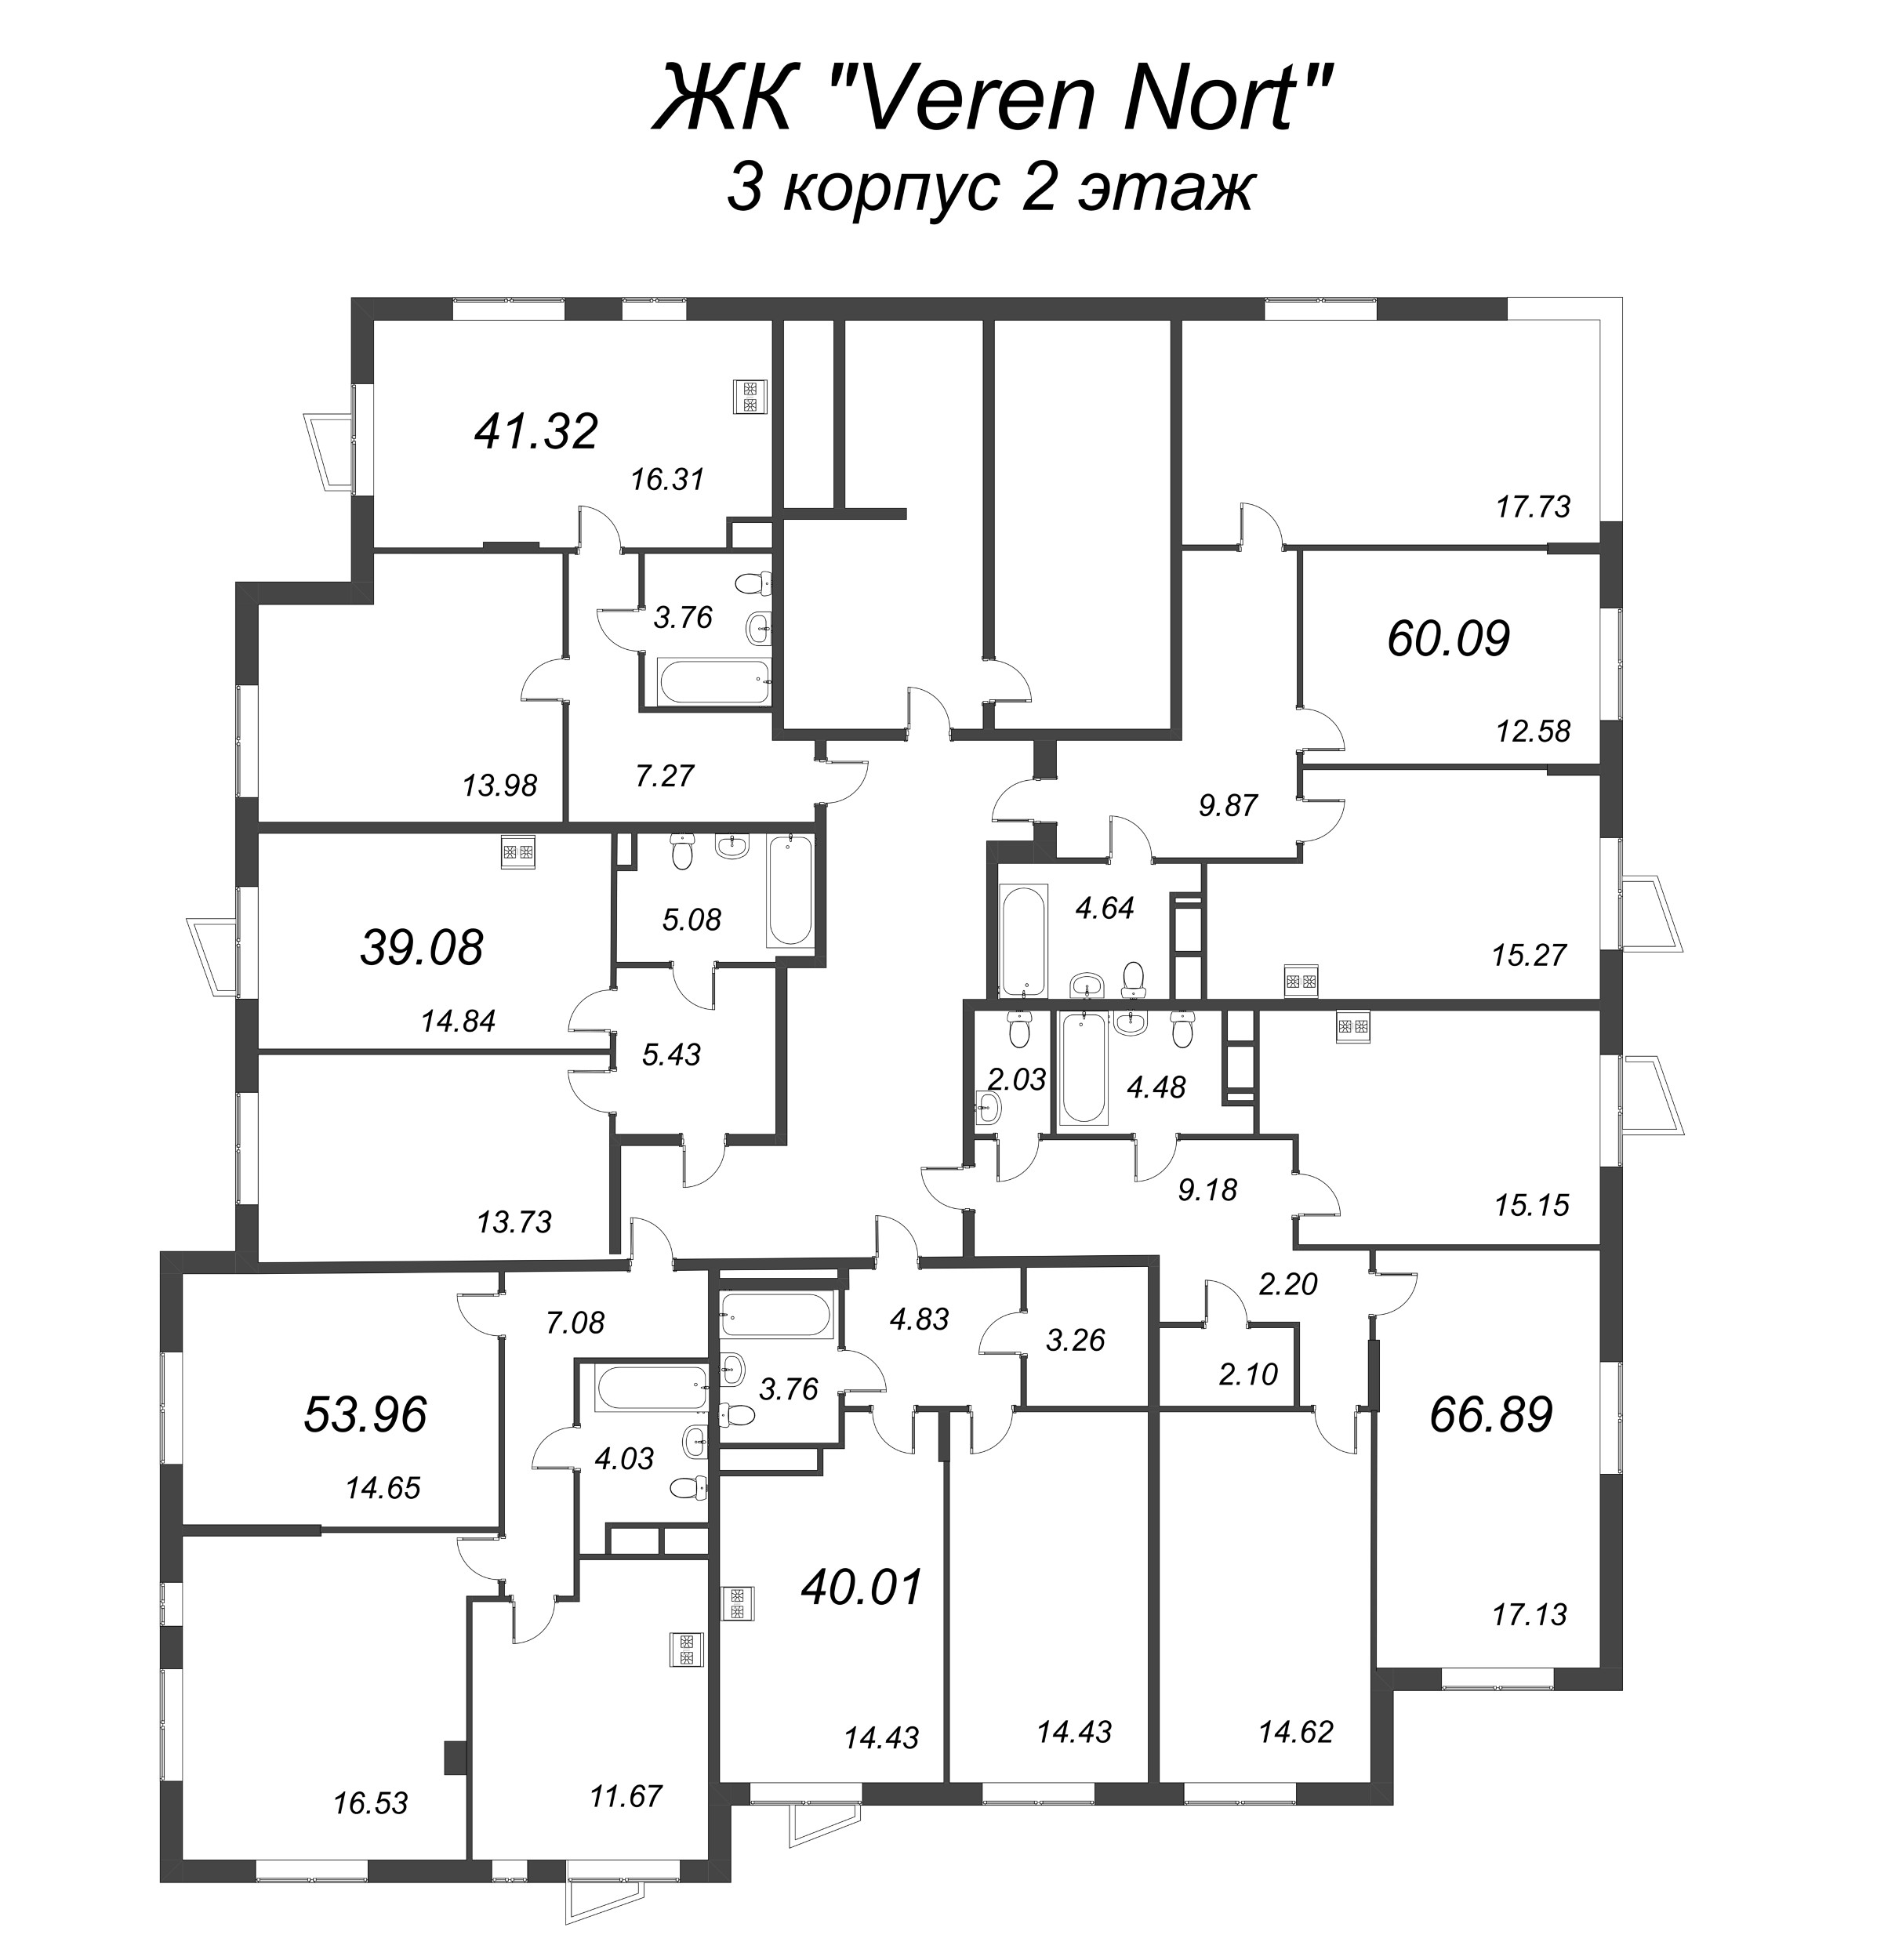 2-комнатная (Евро) квартира, 39.08 м² в ЖК "VEREN NORT сертолово" - планировка этажа